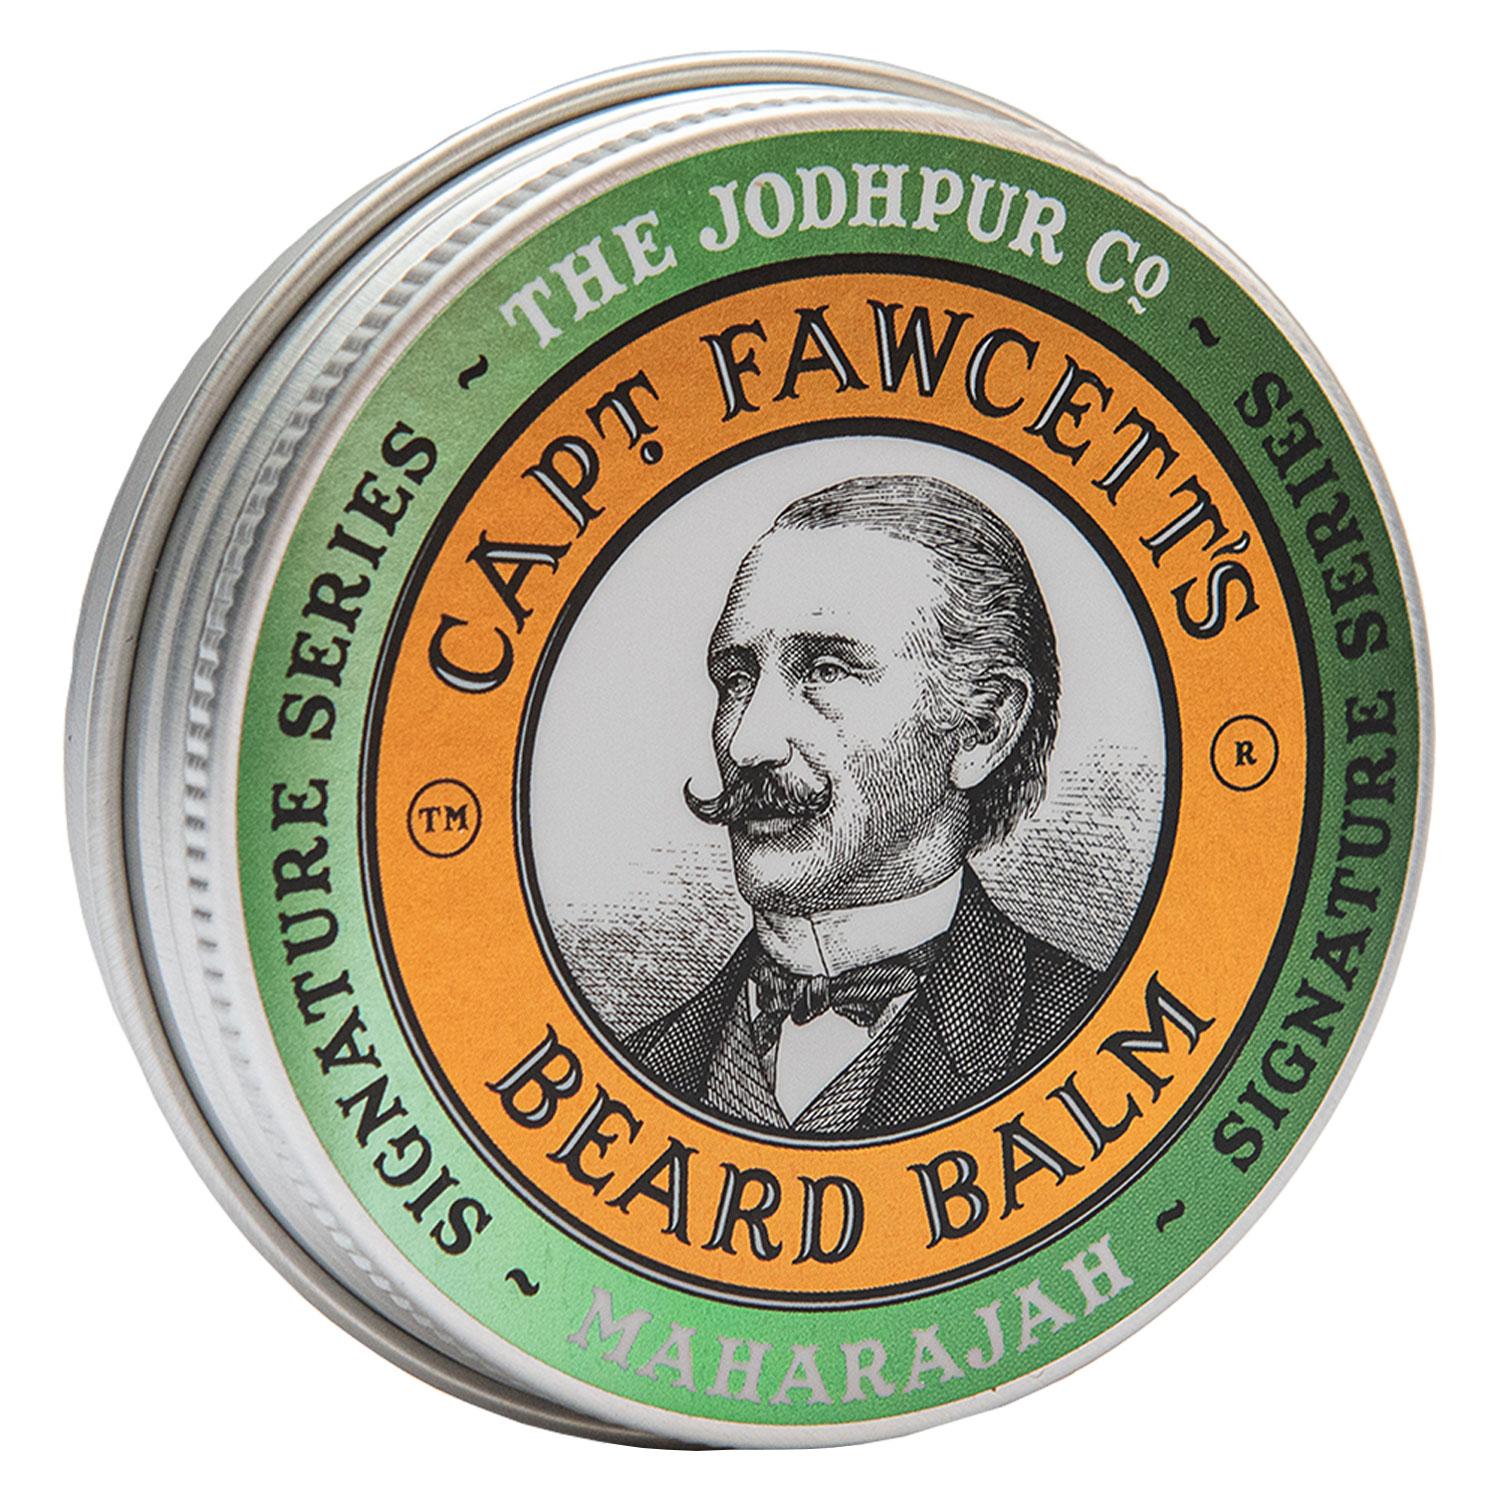 Capt. Fawcett Care - Maharajah Beard Balm